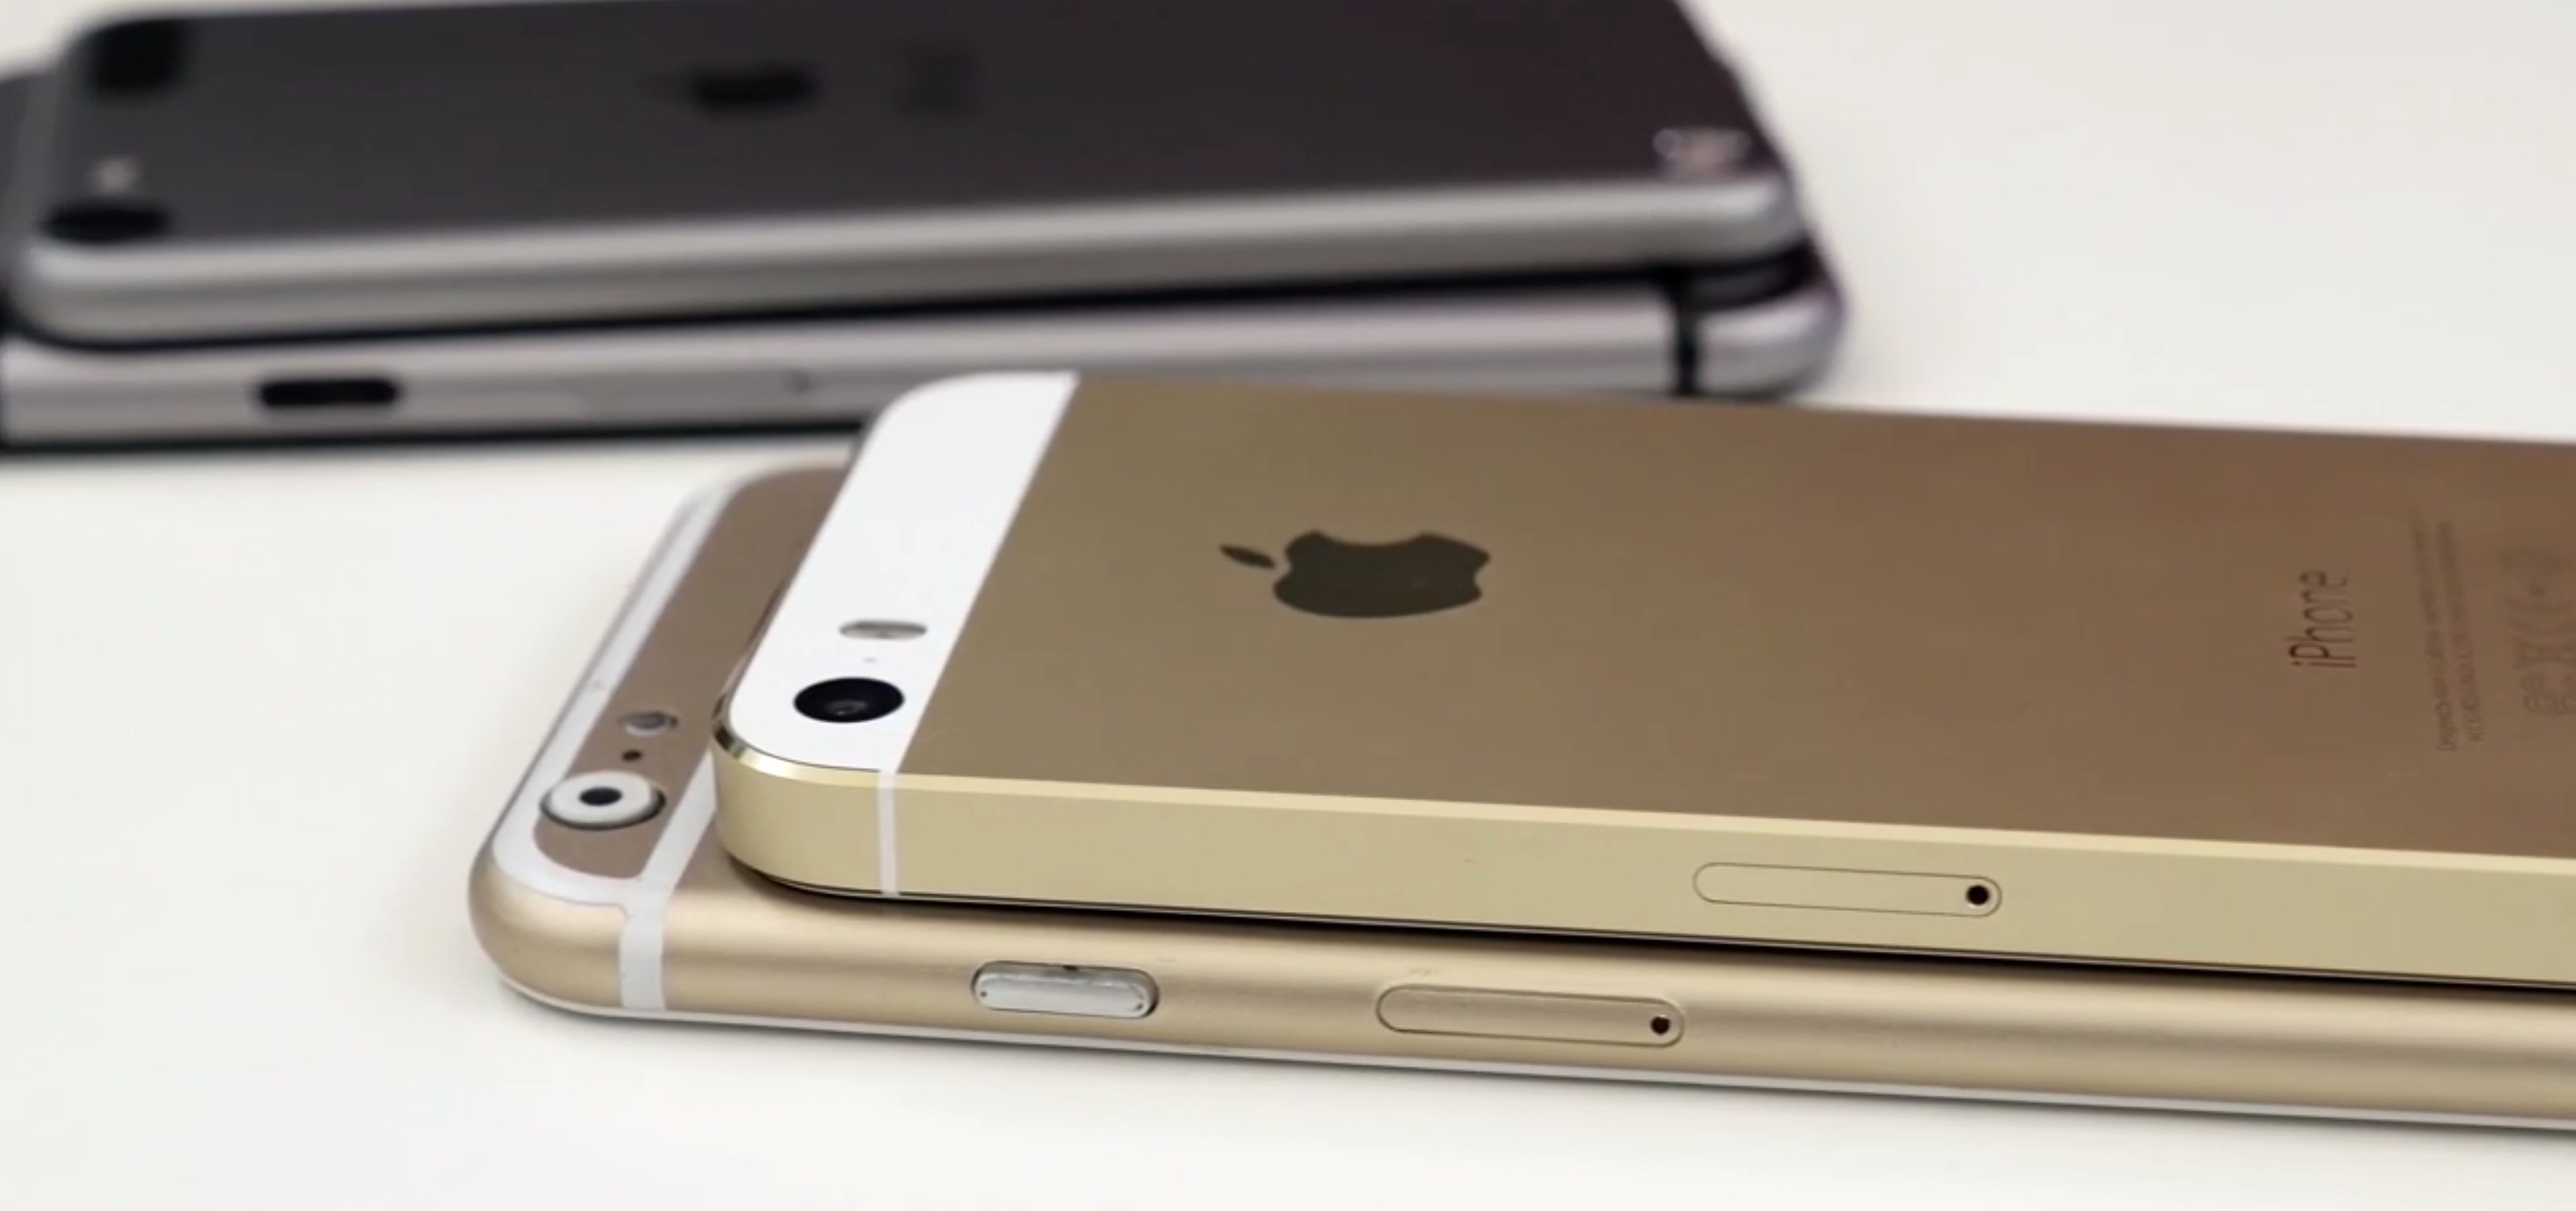 Foxconn startet iPhone 6 Produktion im Juli 1